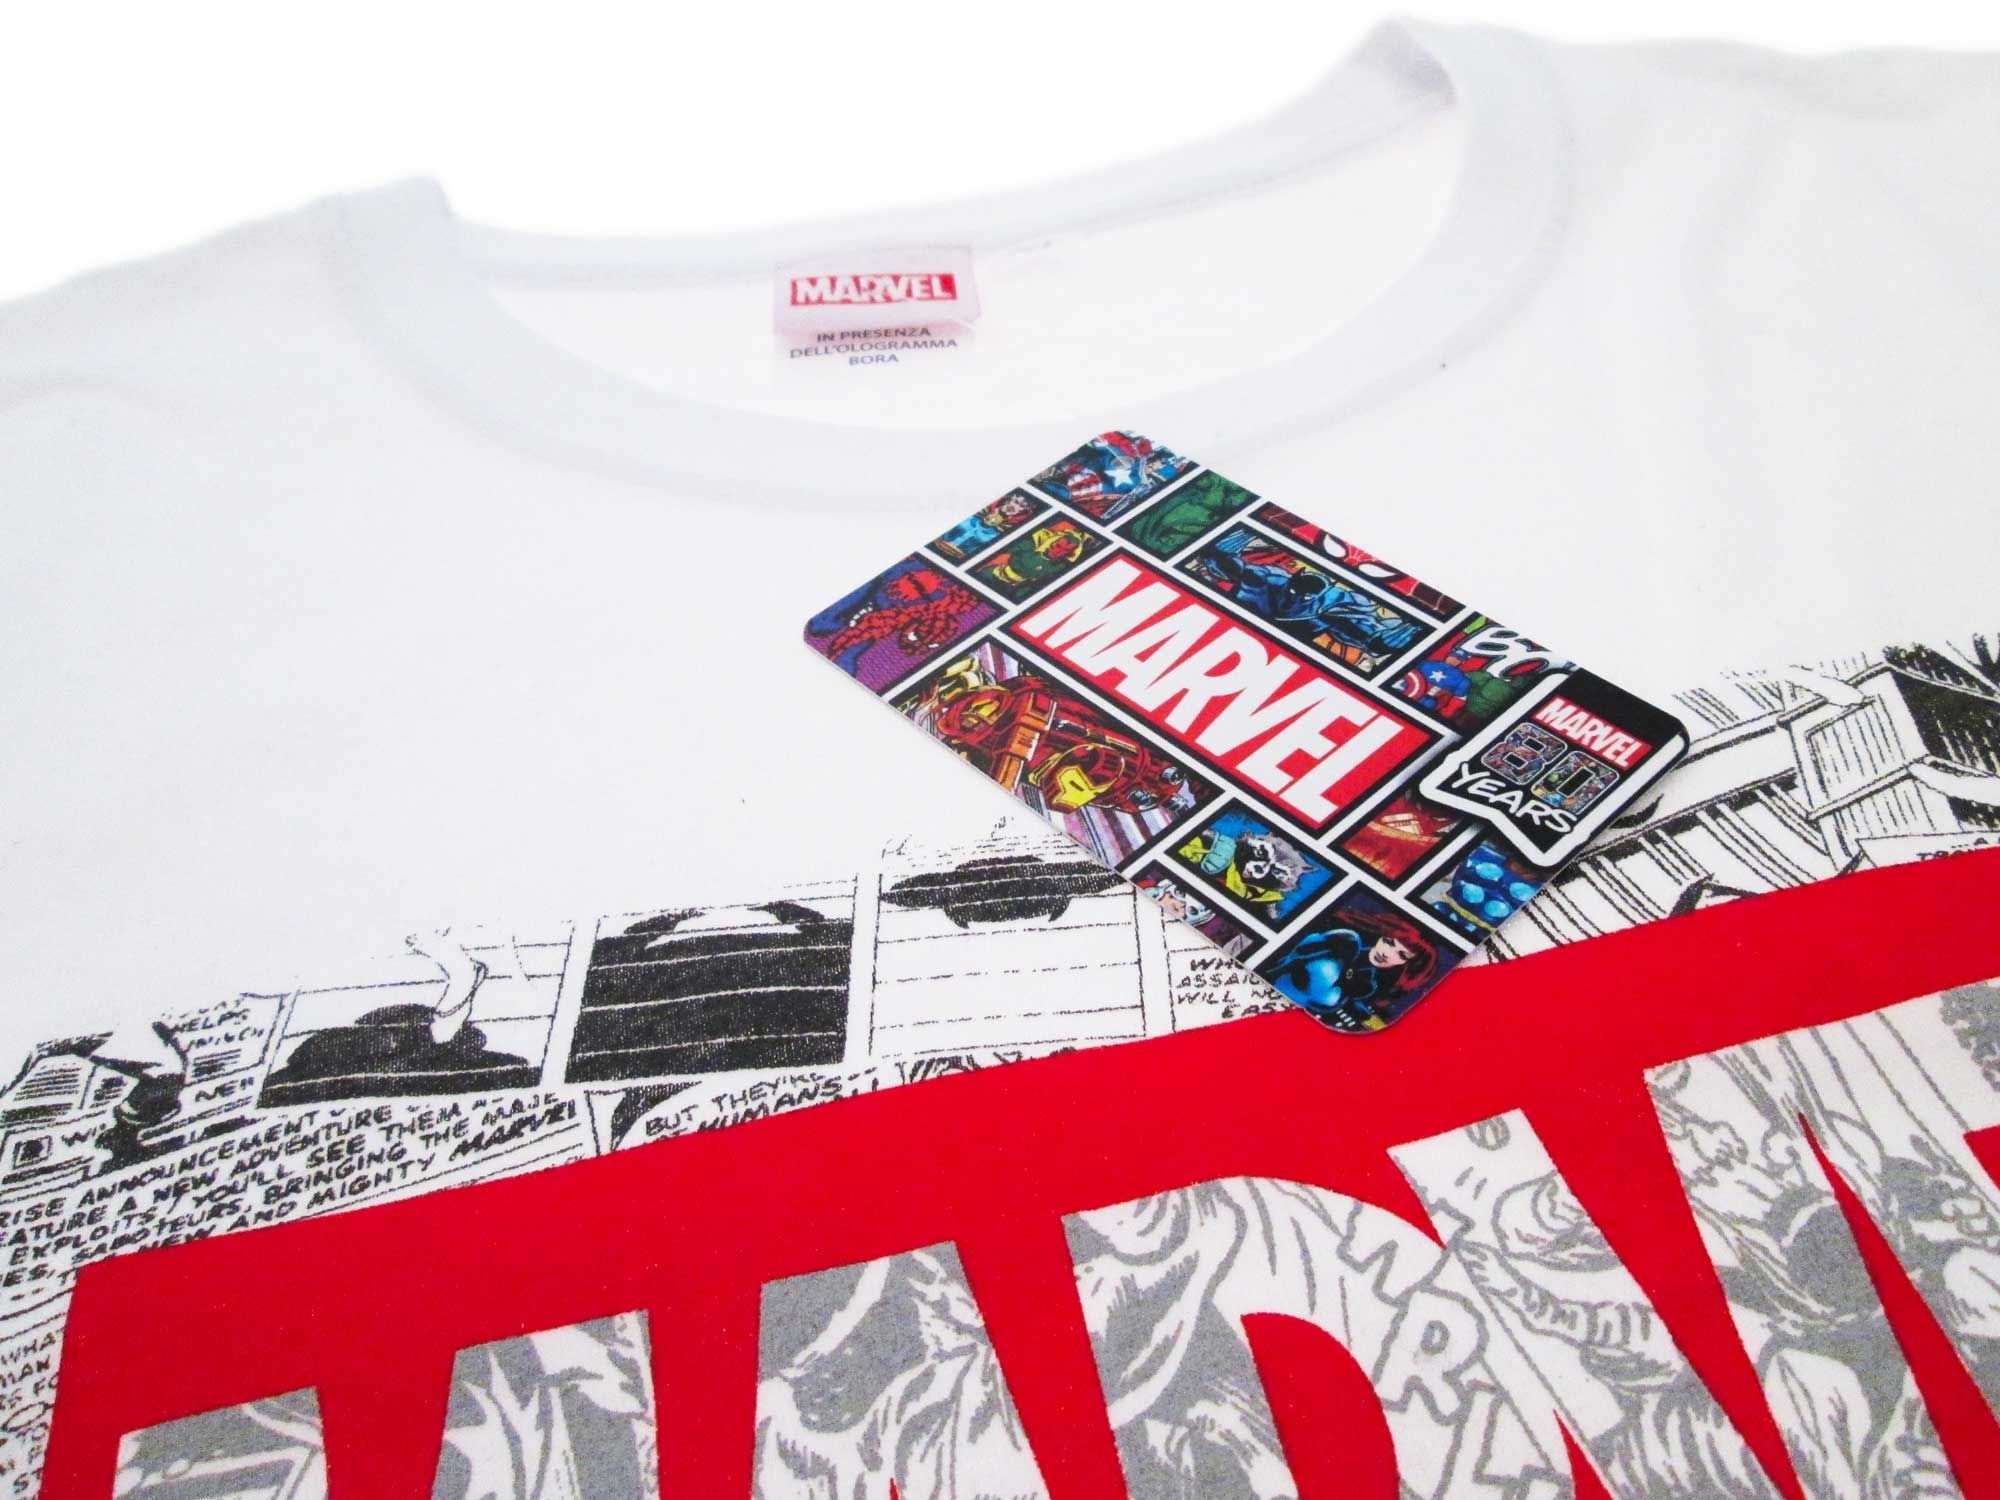 T-shirt Marvel Fumetto - Solo € 19.99! Acquista ora su ALLAN&DAYLE 